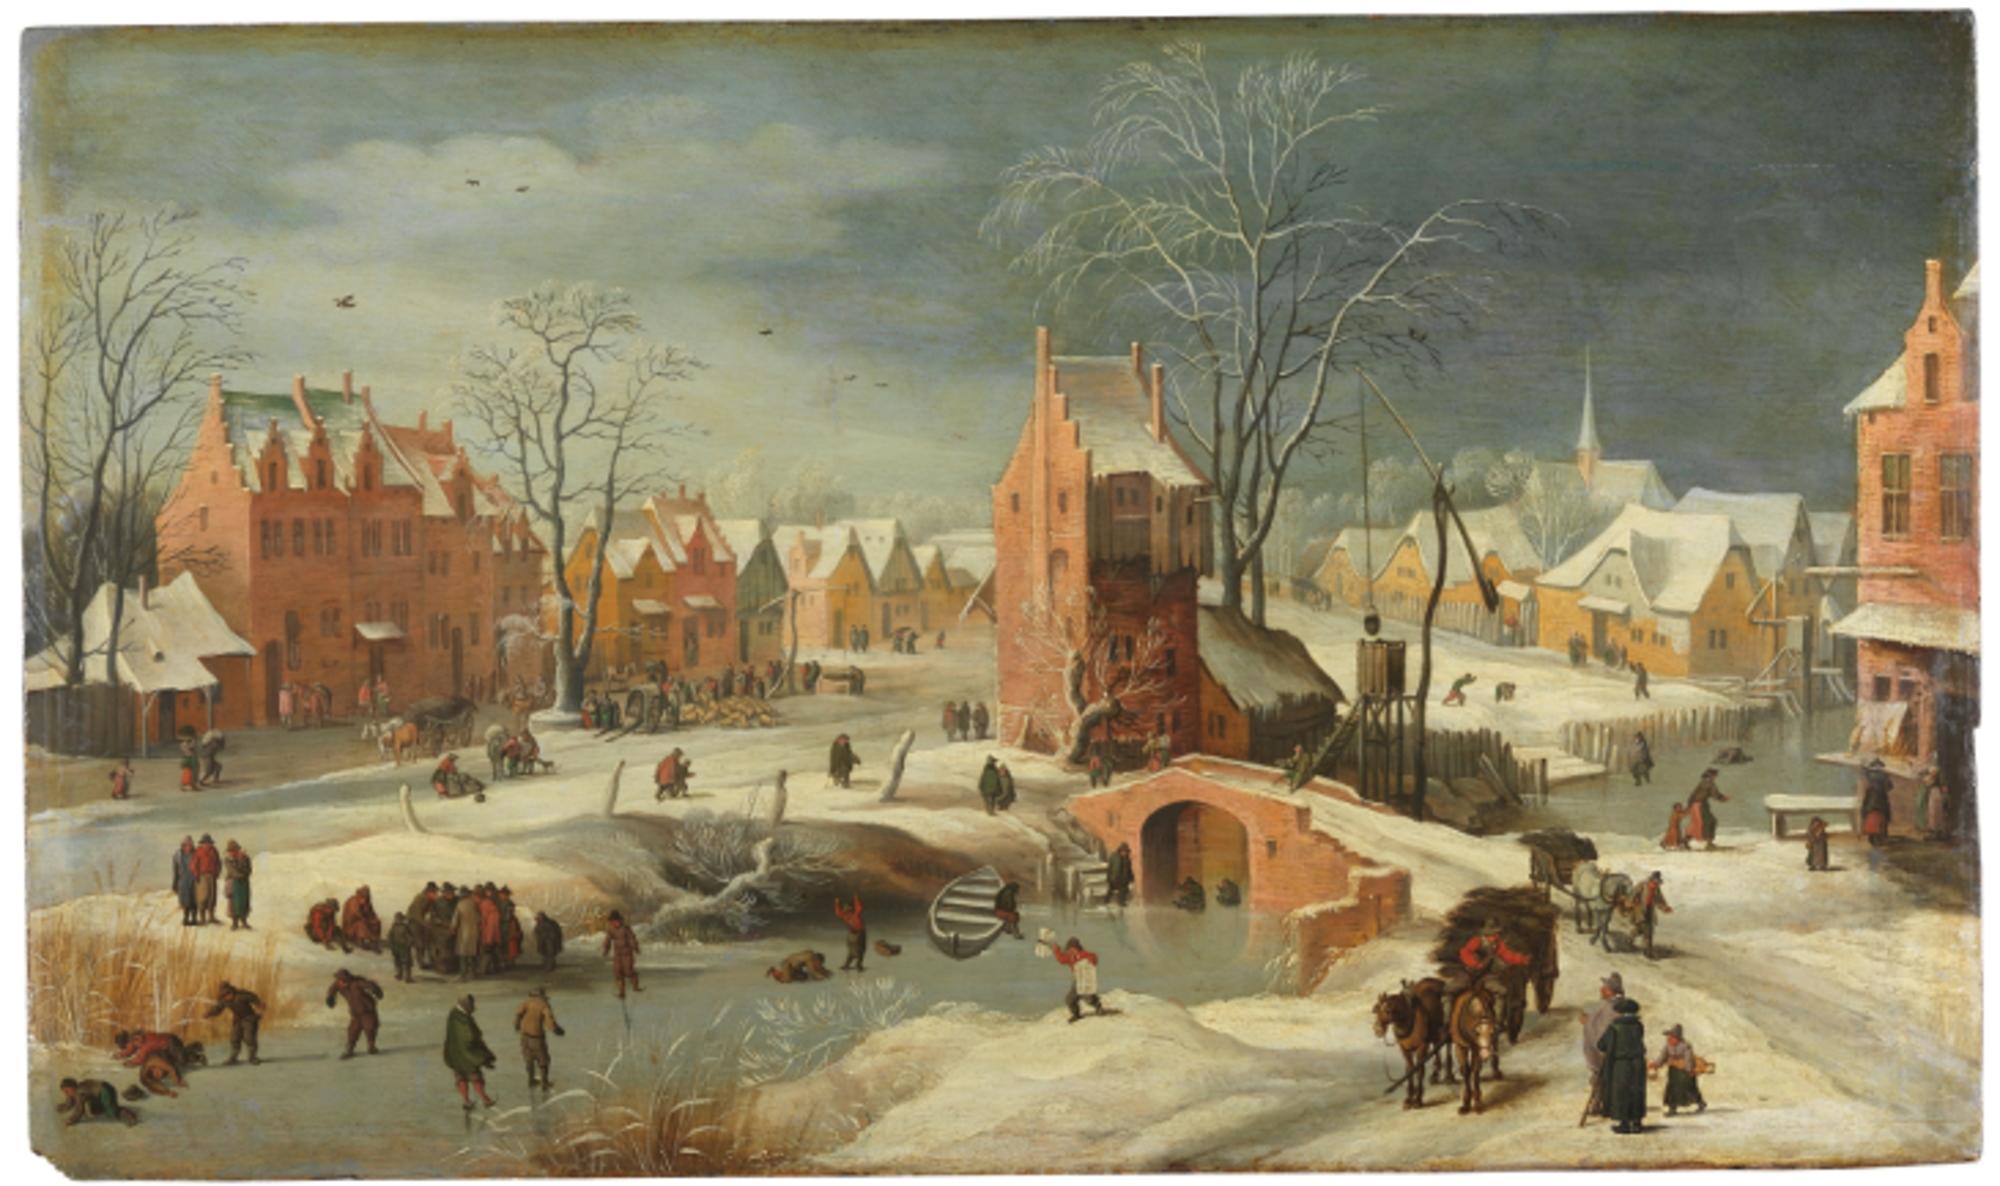 Paisaje nevado por Brueghel el Joven